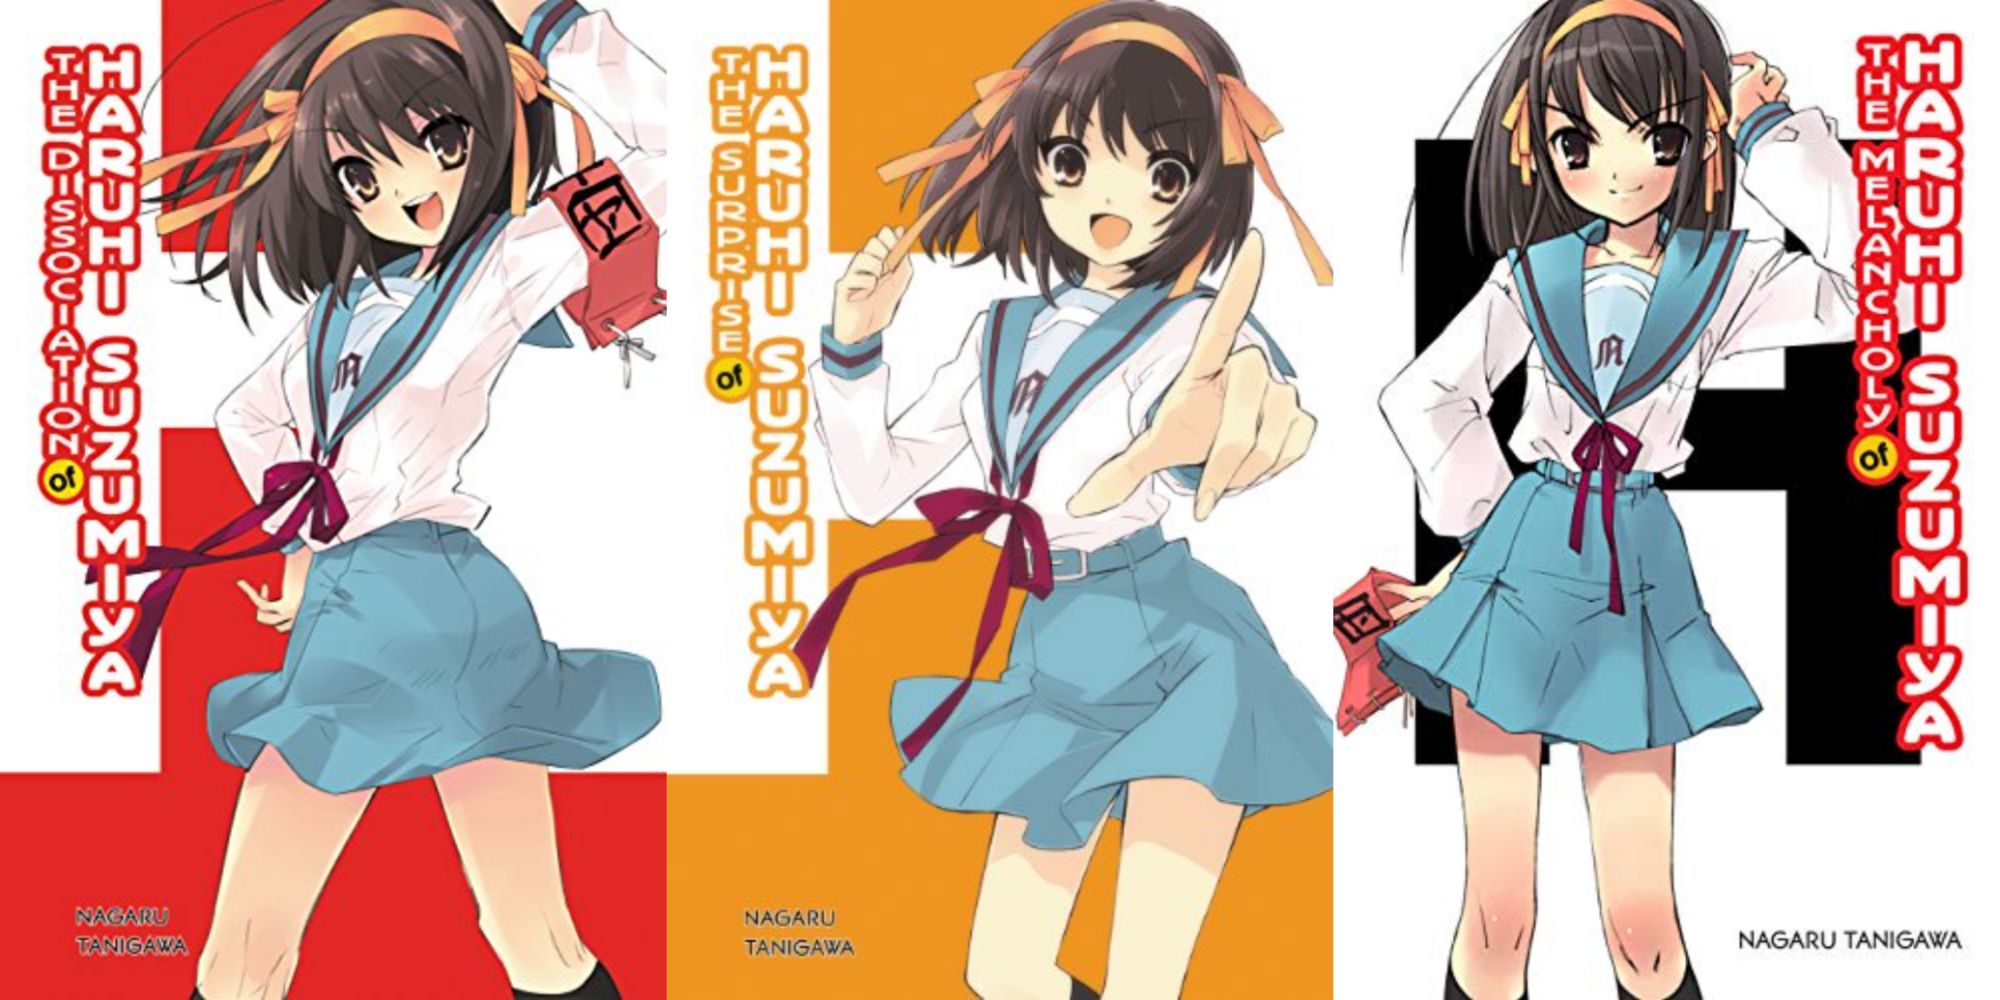 haruhi suzumiya light novels